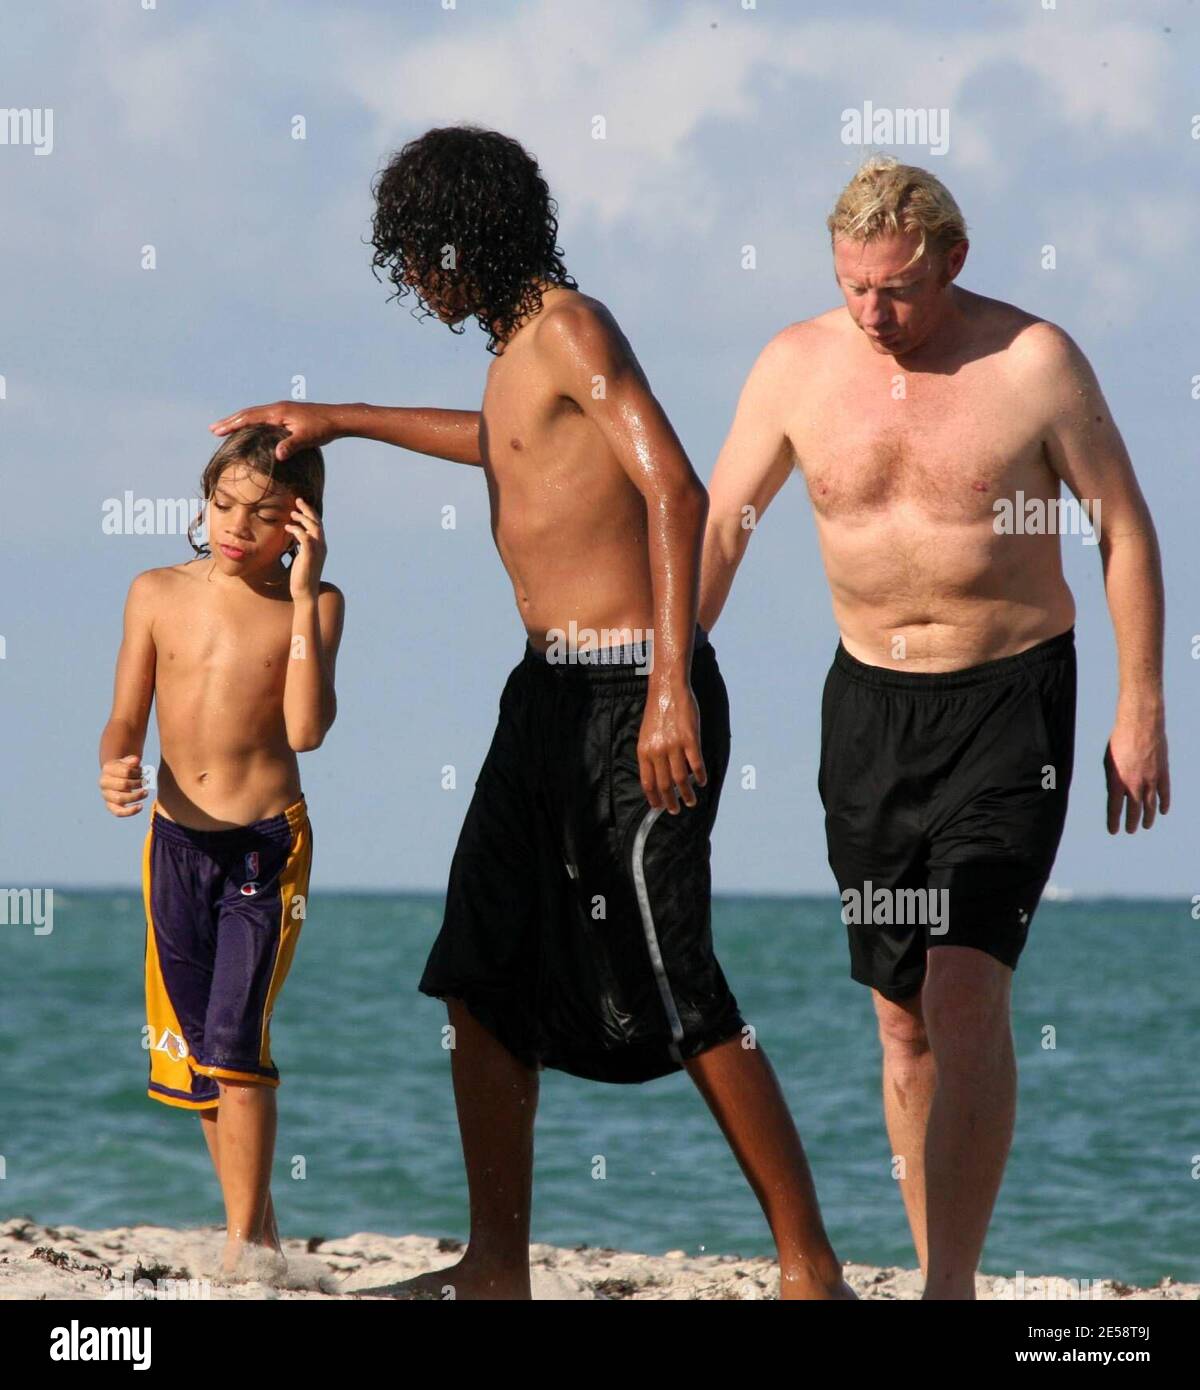 Noah Becker ist endlich ein junger Mann. Boris Beckers erster Sohn scheint  so groß wie sein Vater und schützte Boris und seinen jüngeren Bruder Elias  sehr, als Fotografen an einem Nachmittag in